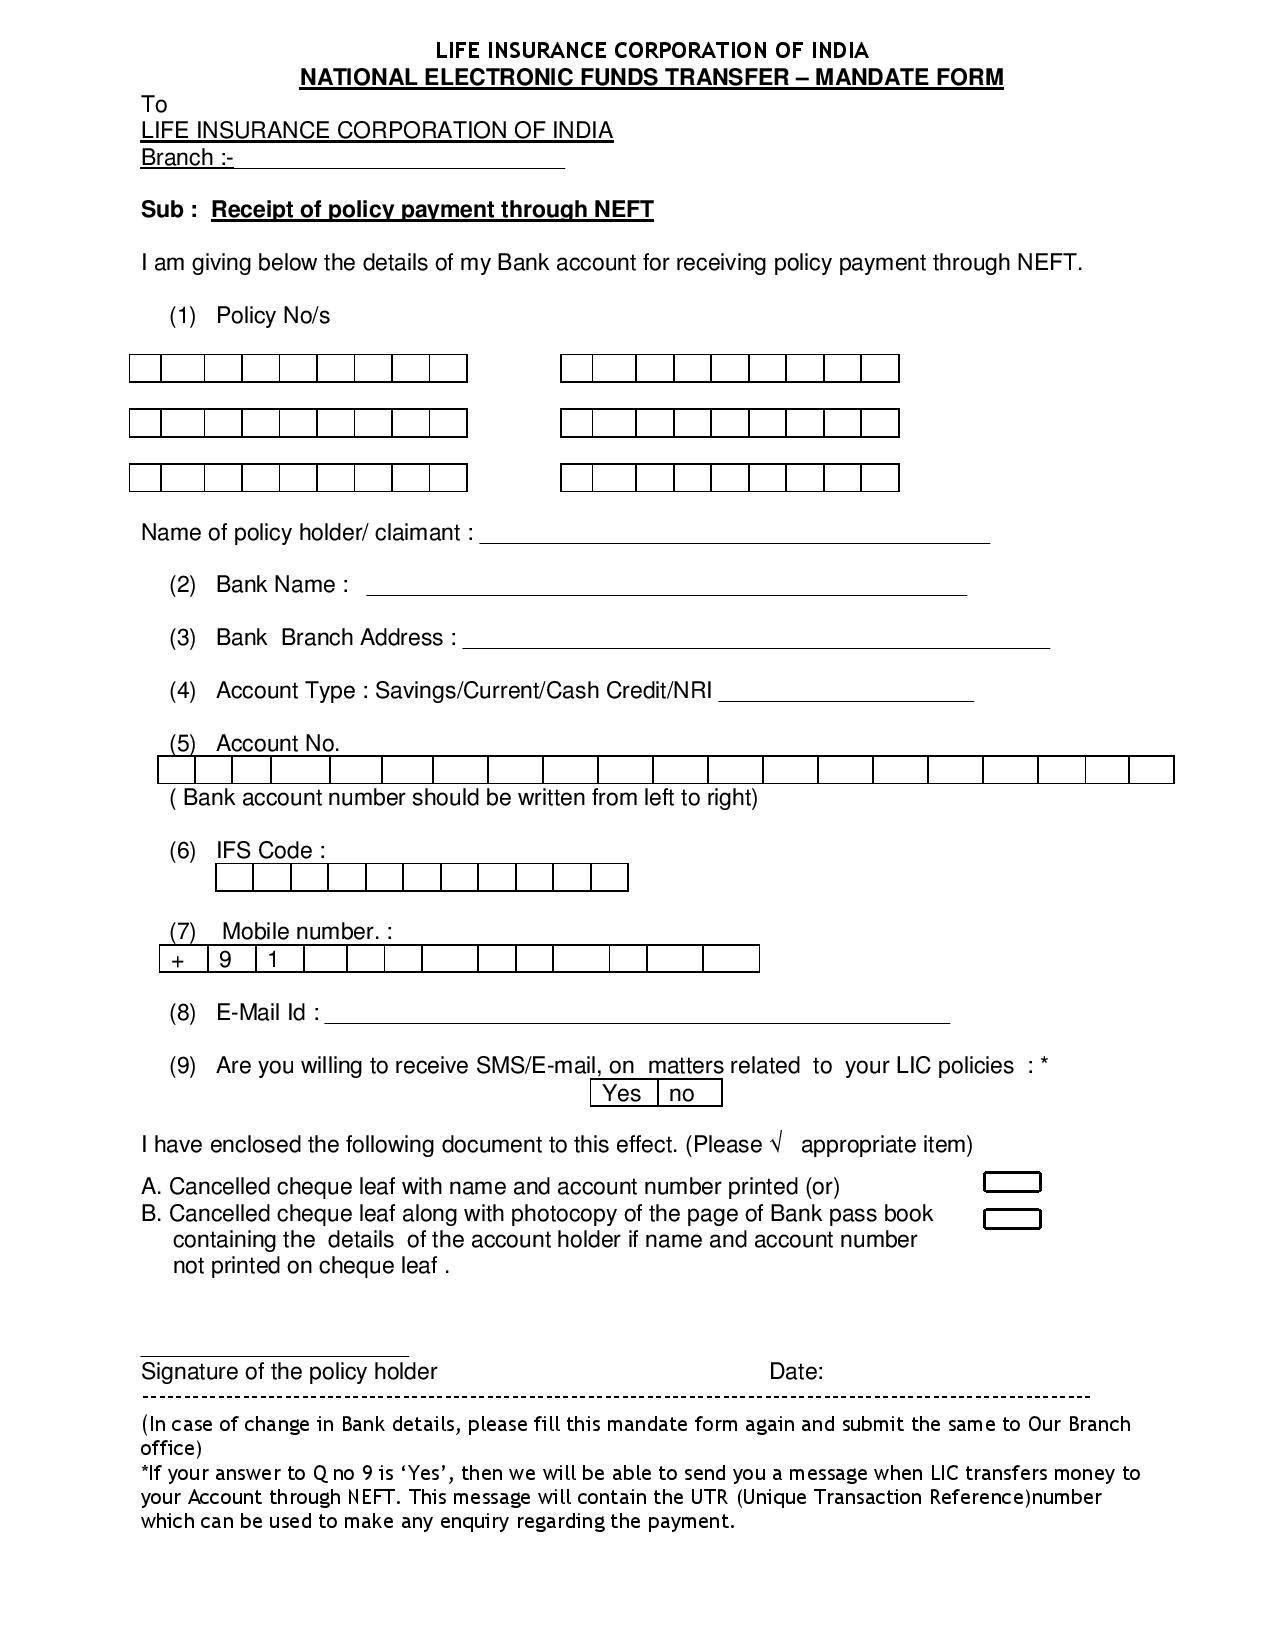 assignment lic form no 5289 pdf download